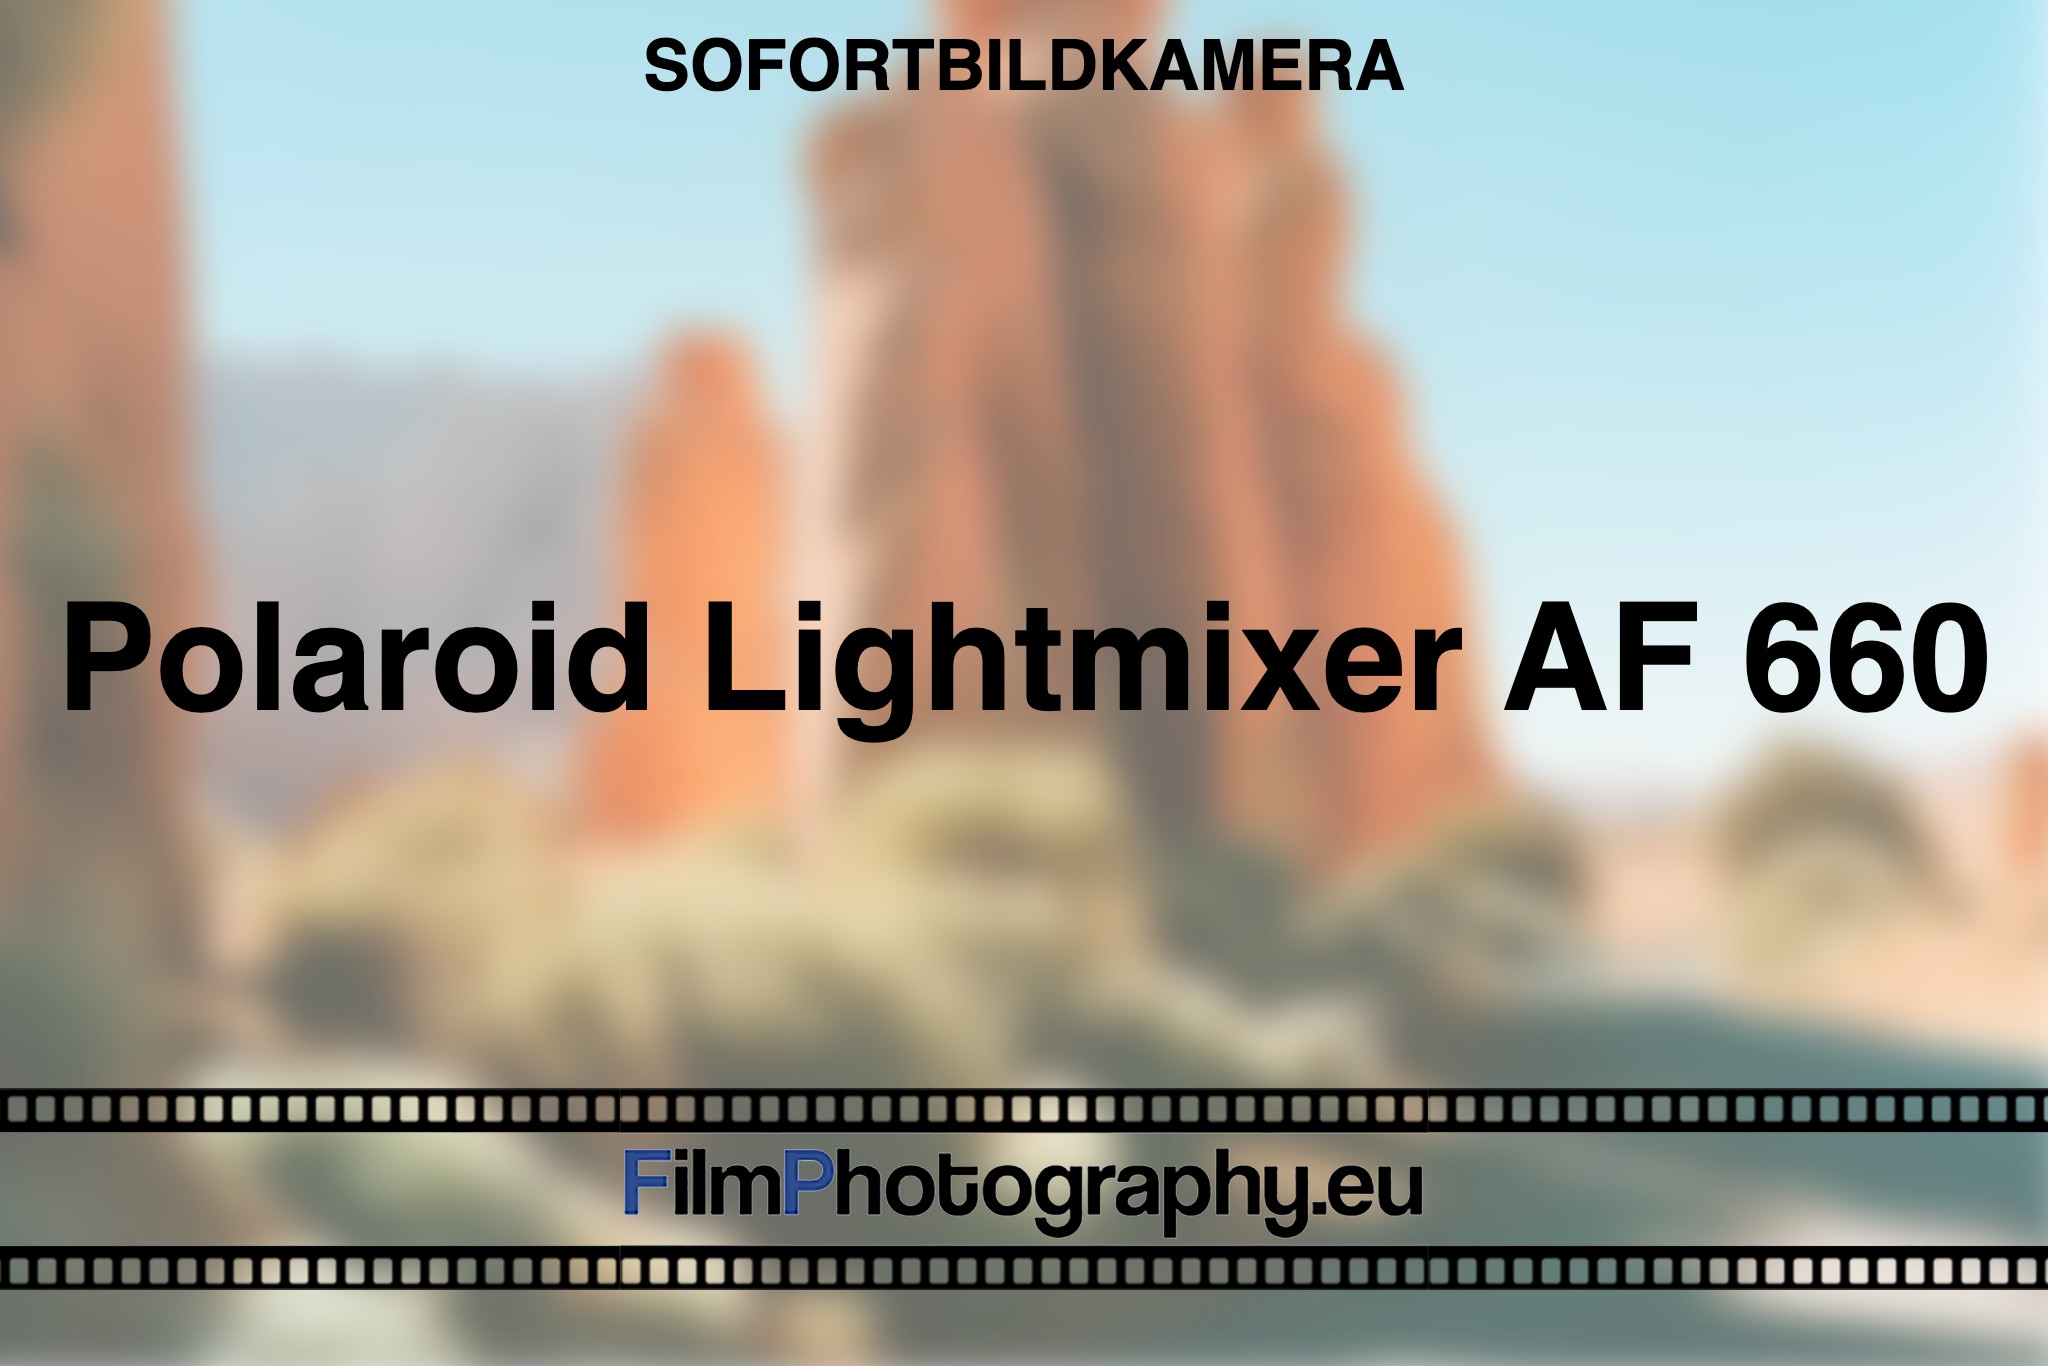 polaroid-lightmixer-af-660-sofortbildkamera-bnv